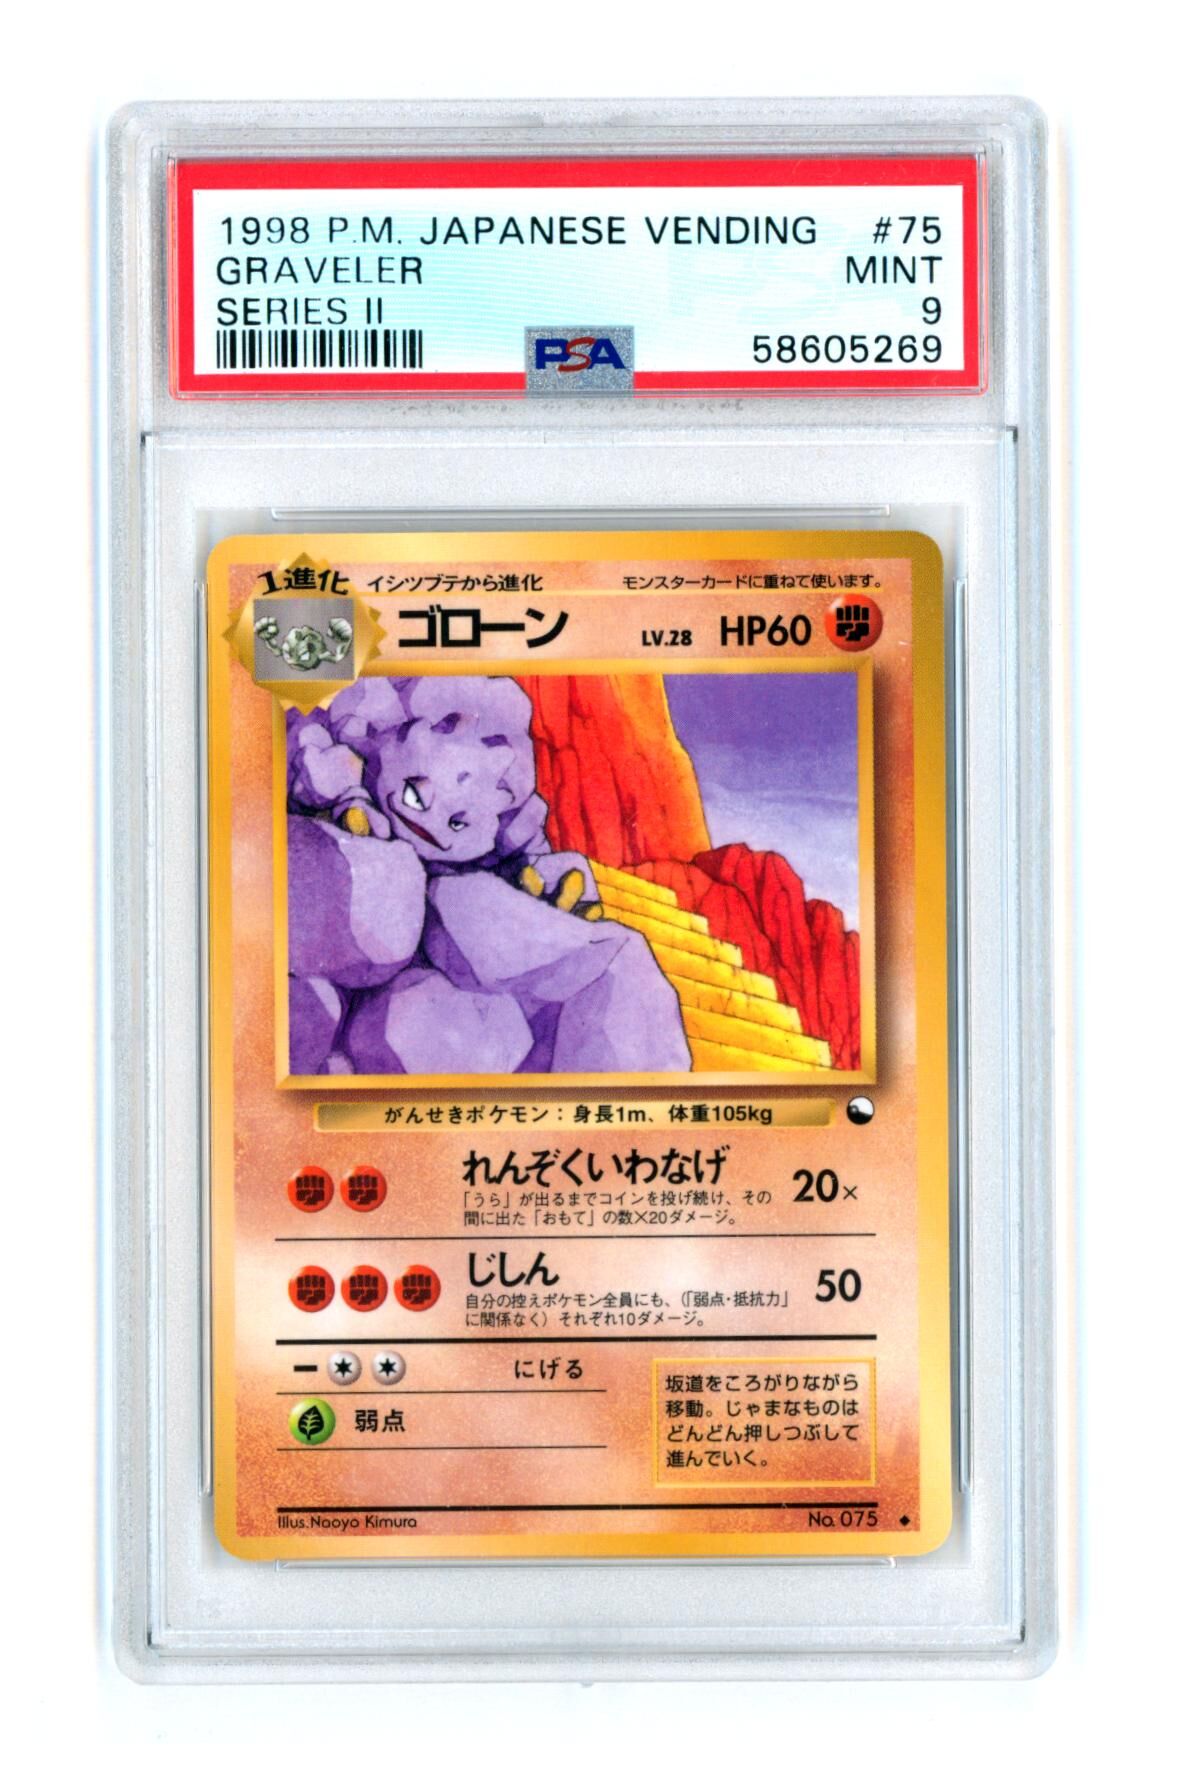 Graveler - Series 2 - Japanese Vending - PSA 9 MINT - Pokémon